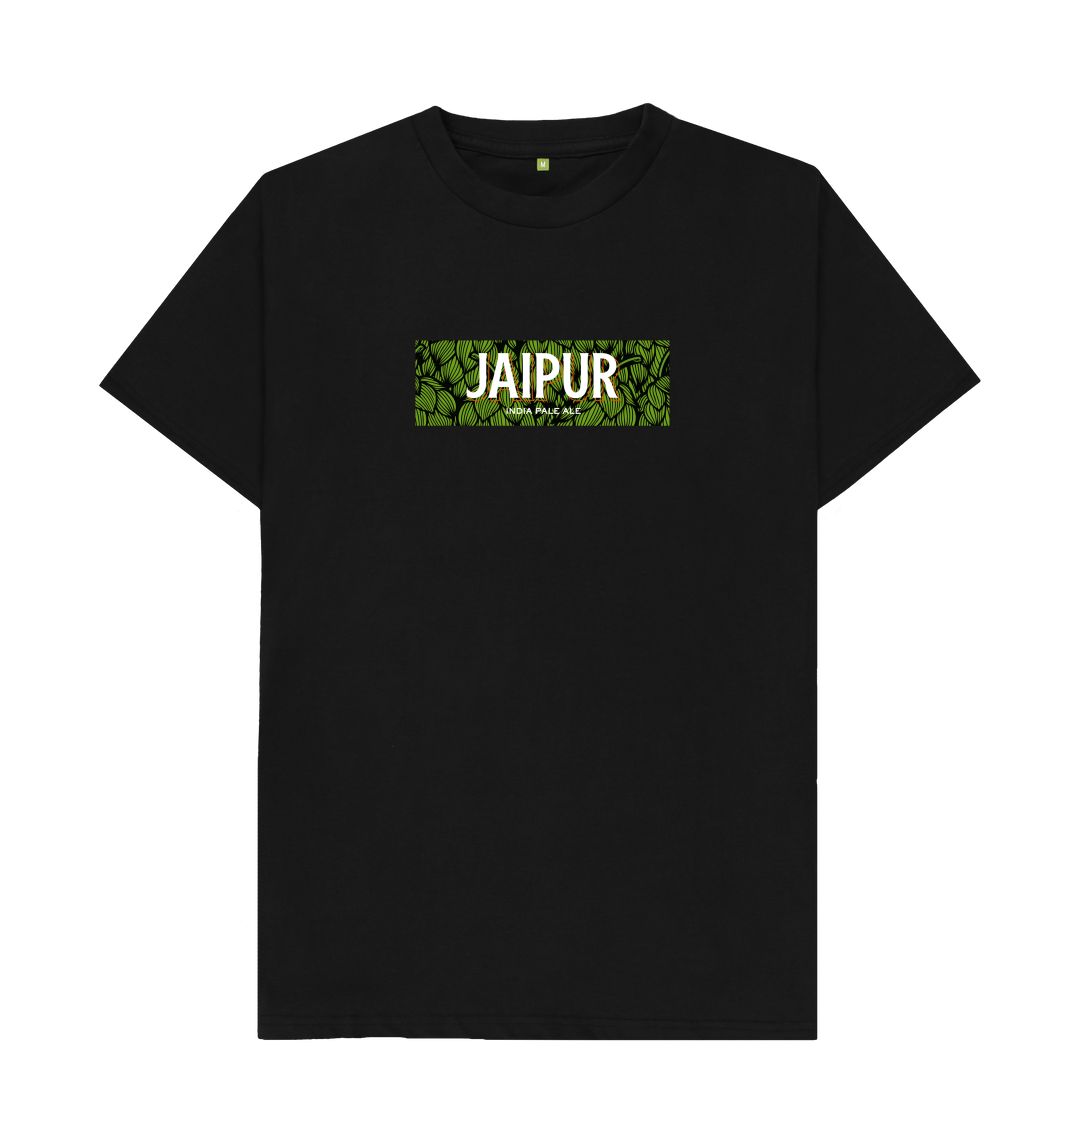 Jaipur hops boxed logo t shirt Printed T-shirt Thornbridge